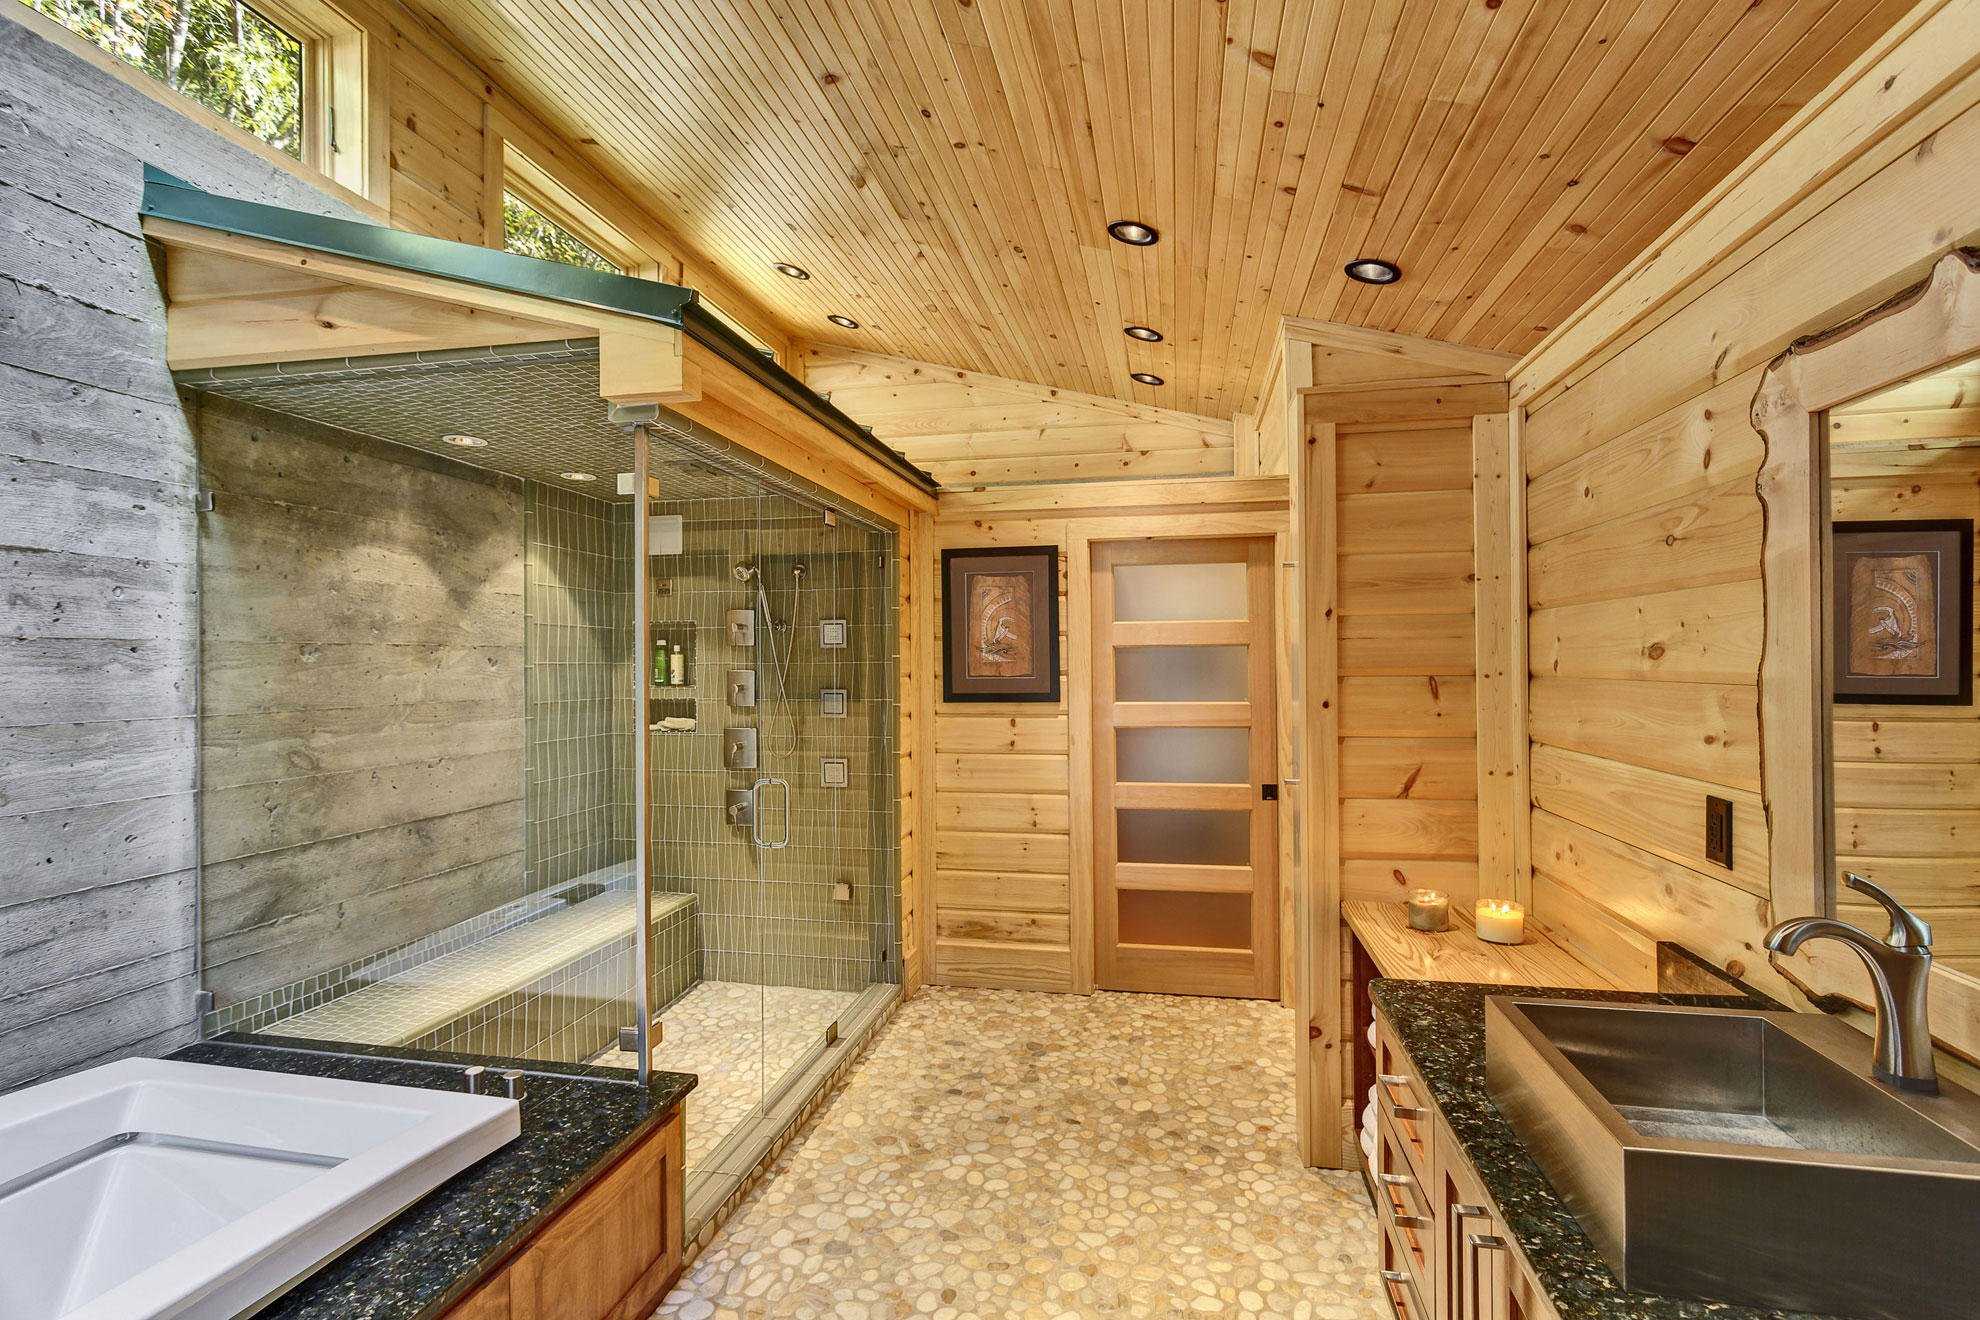 Ванная комната в частном доме – планировка, коммуникации, утепление + видео